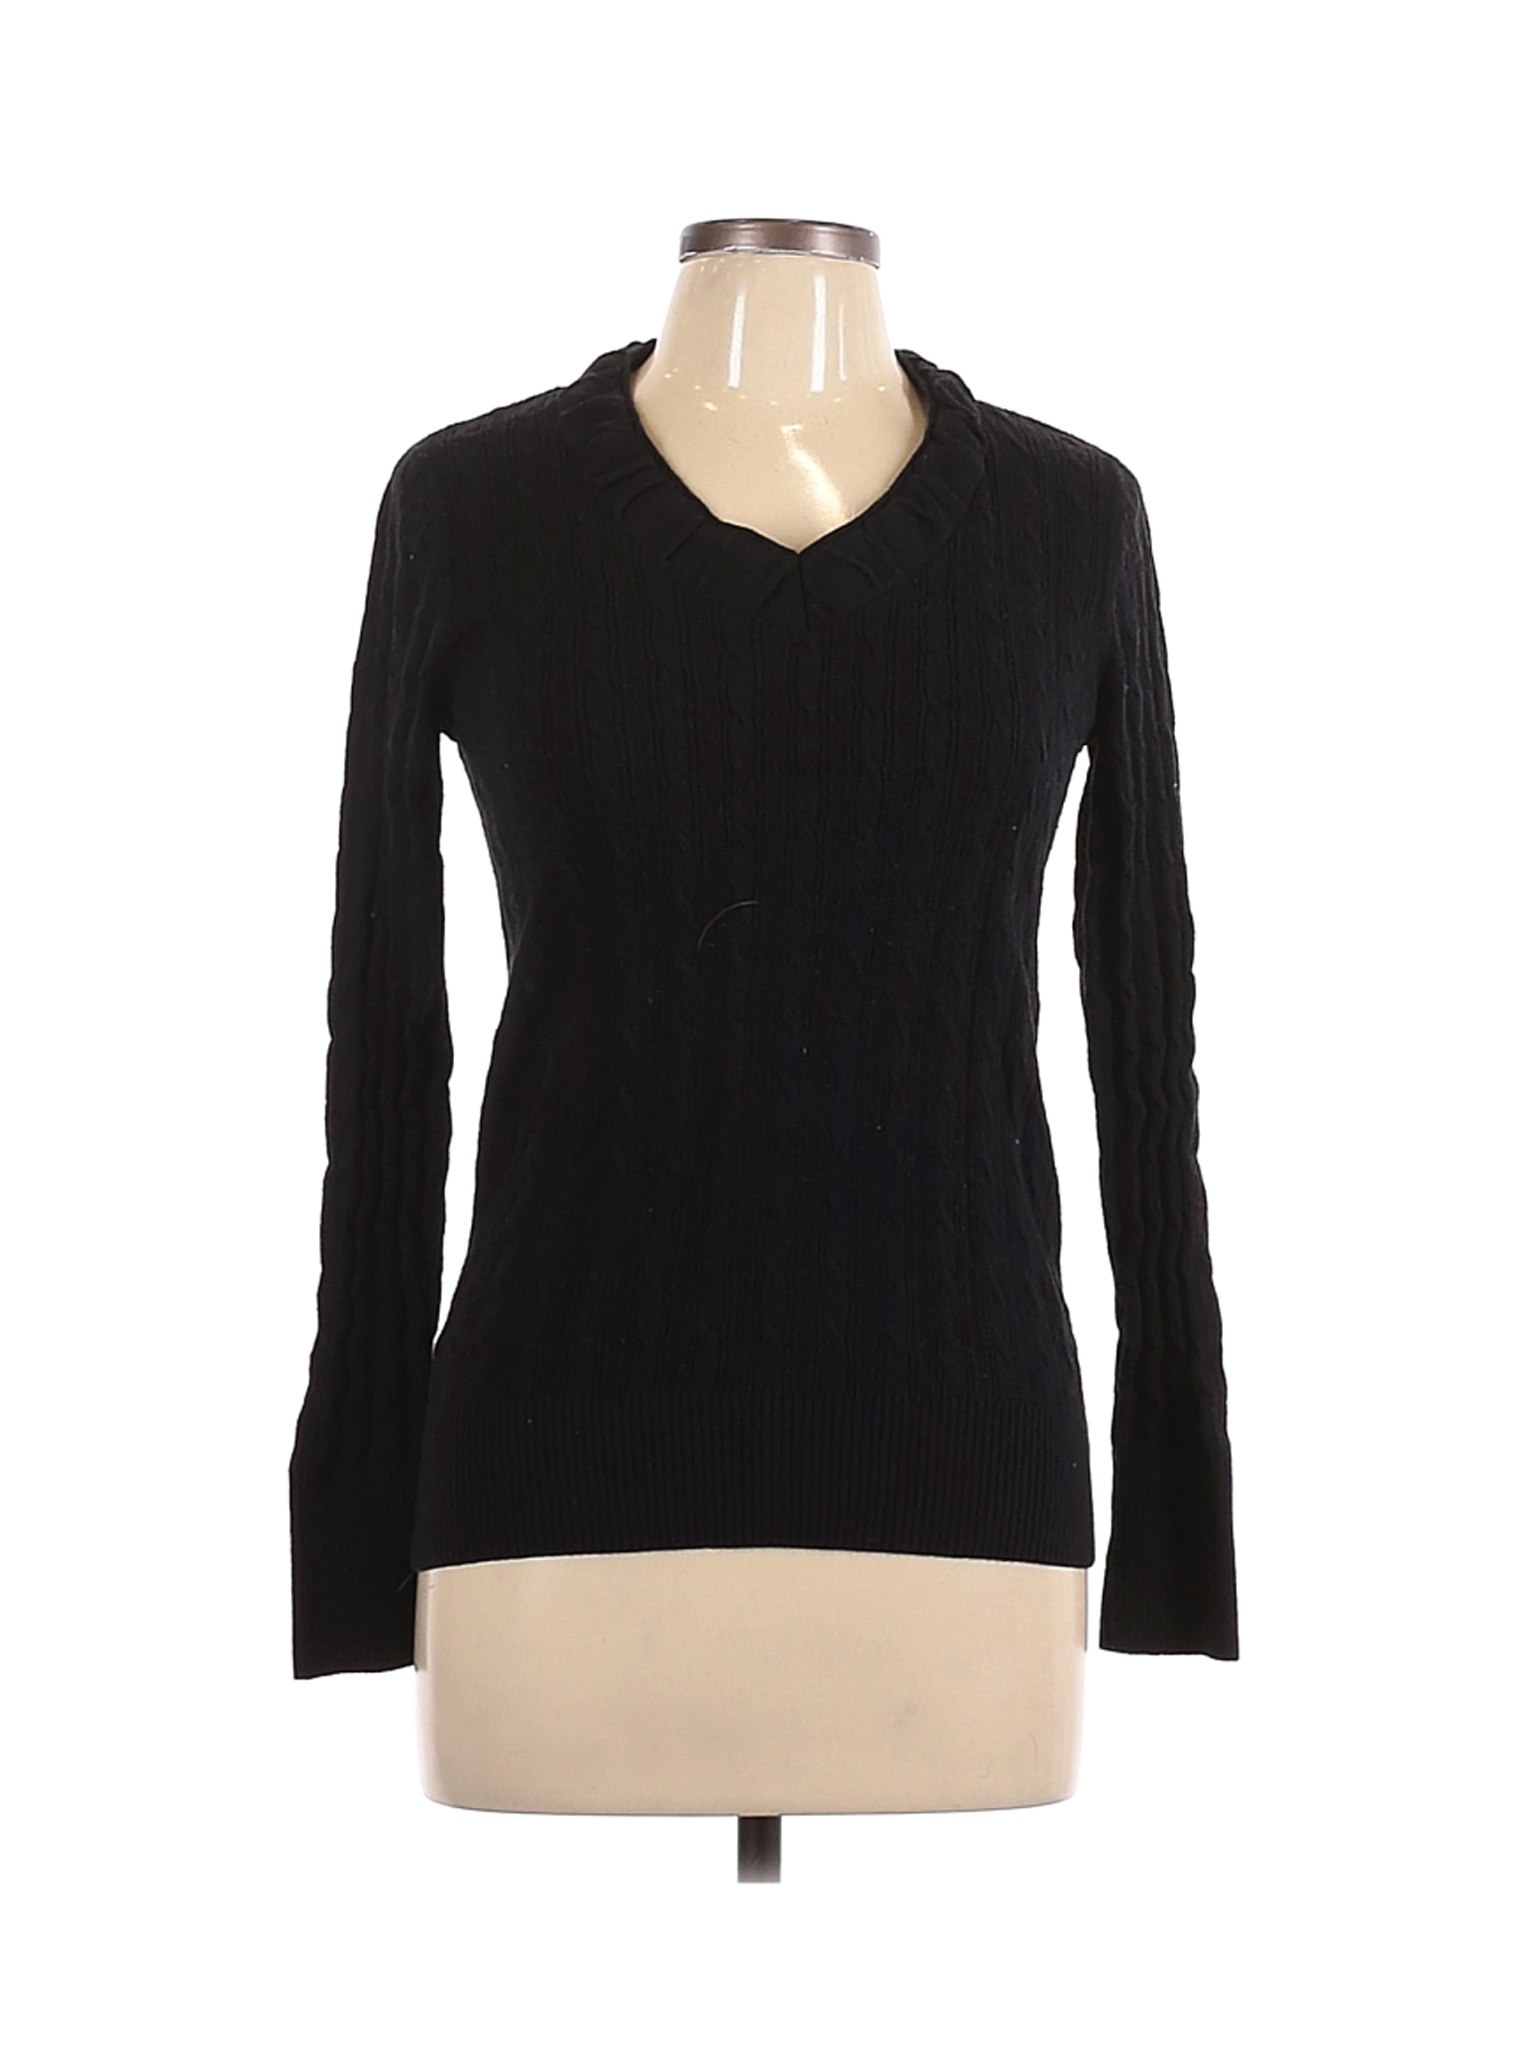 Eddie Bauer Women Black Pullover Sweater M | eBay